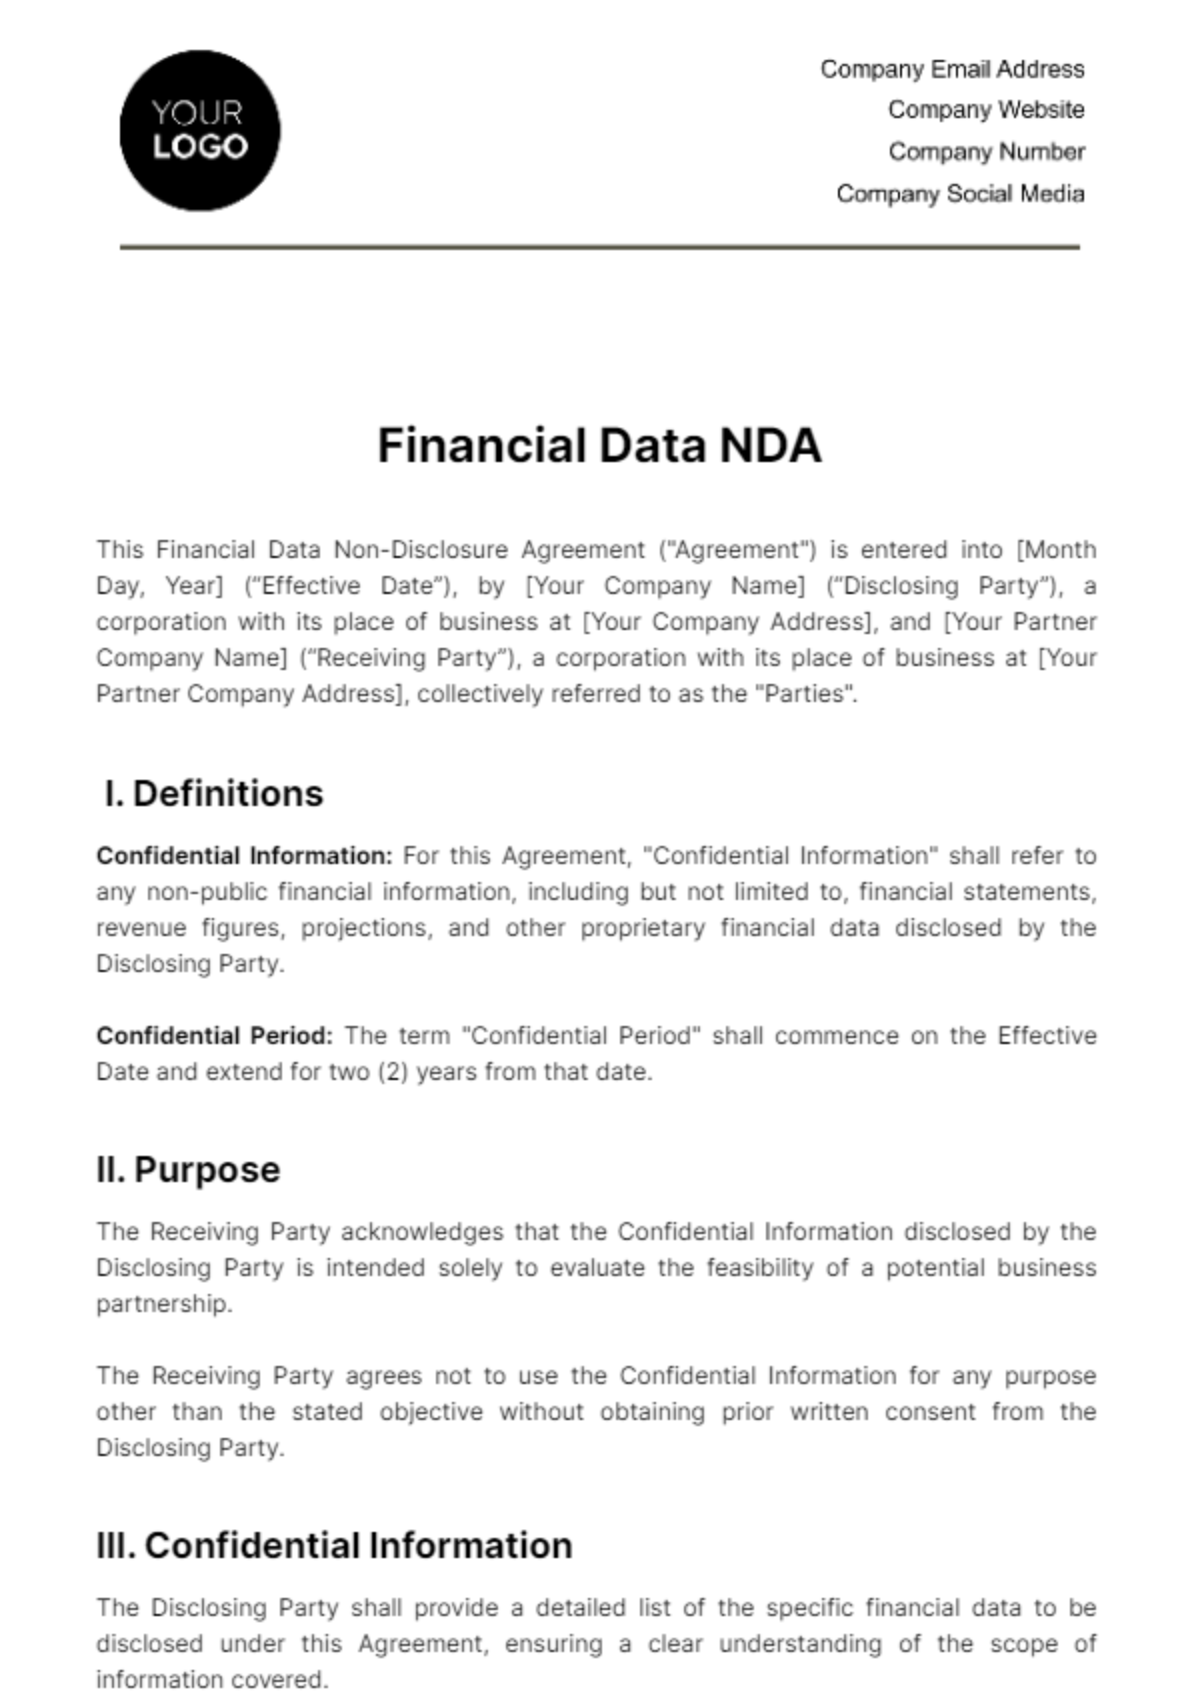 Financial Data NDA Template